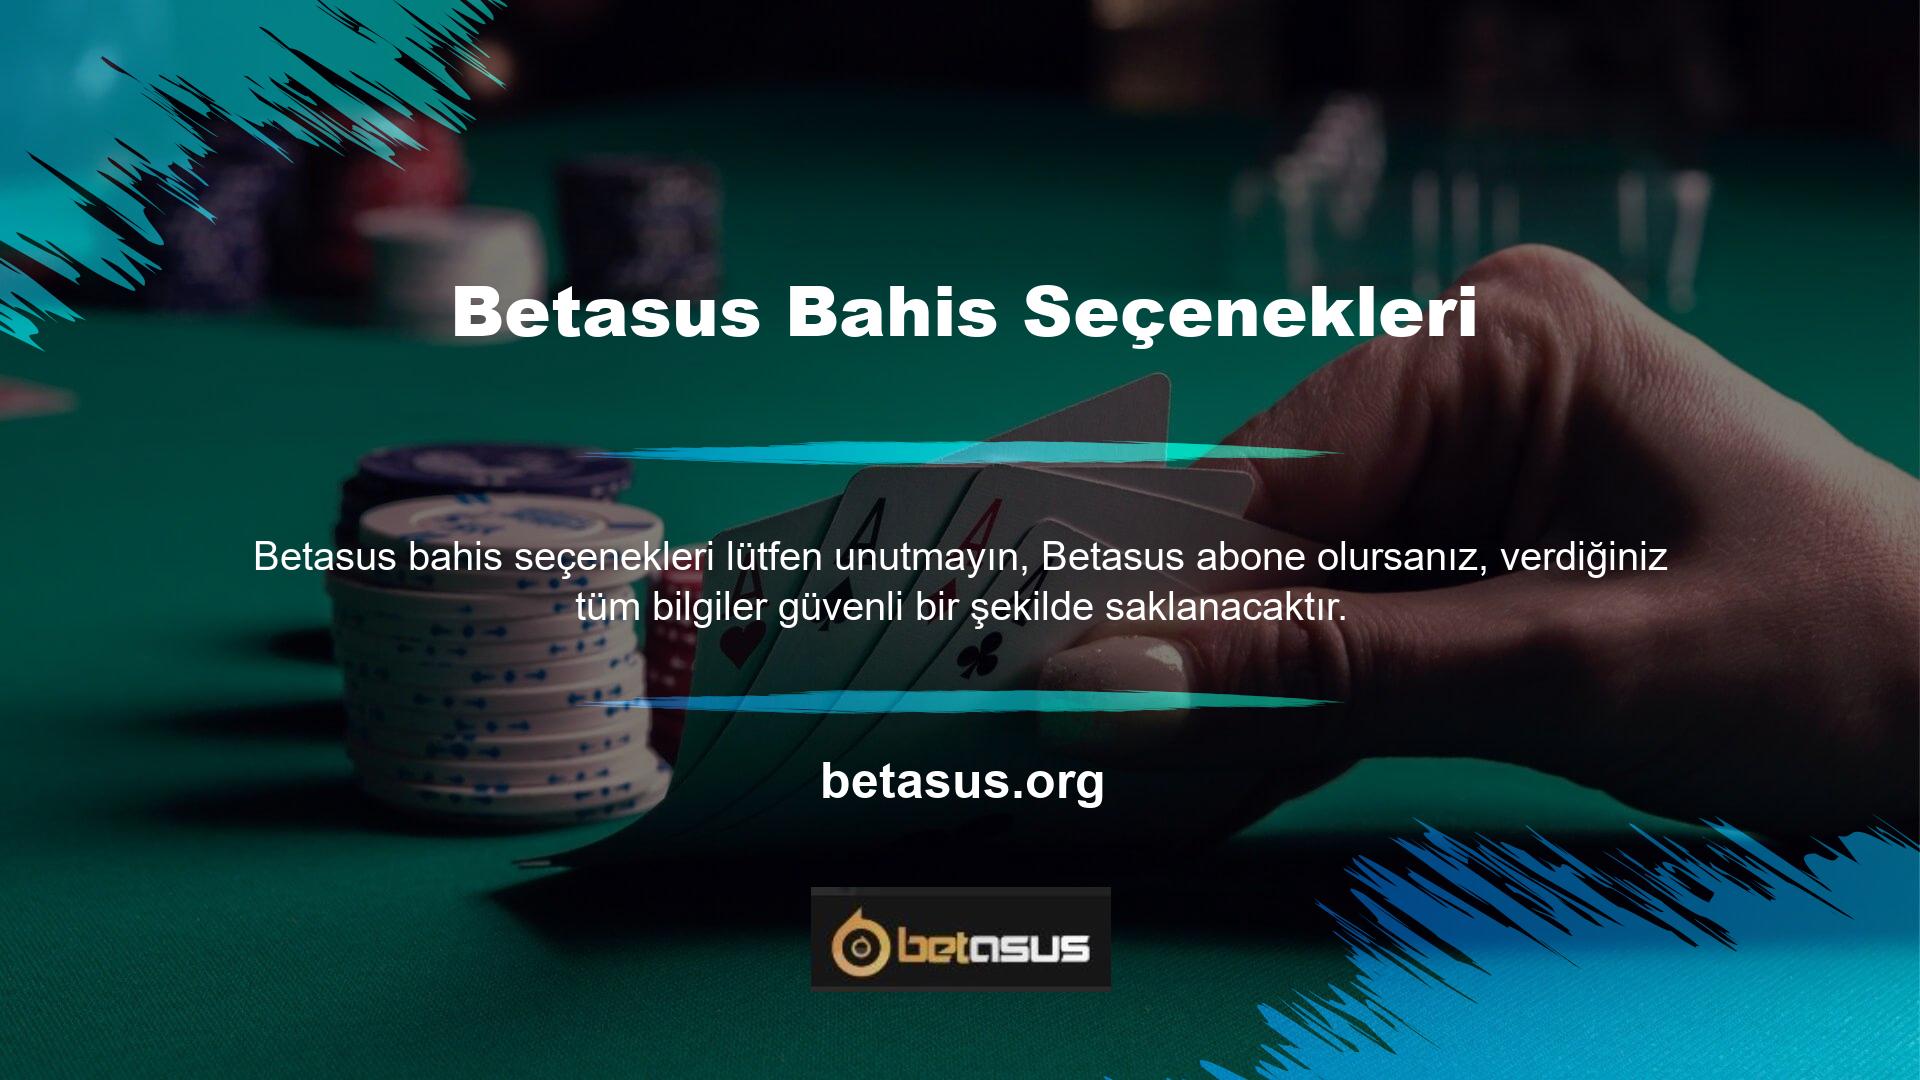 Betasus üyelik bilgilerim güvende mi Bağlantı hedefi gizlilik politikası ve gizlilik politikası şartlarına uygun bir web sitesidir